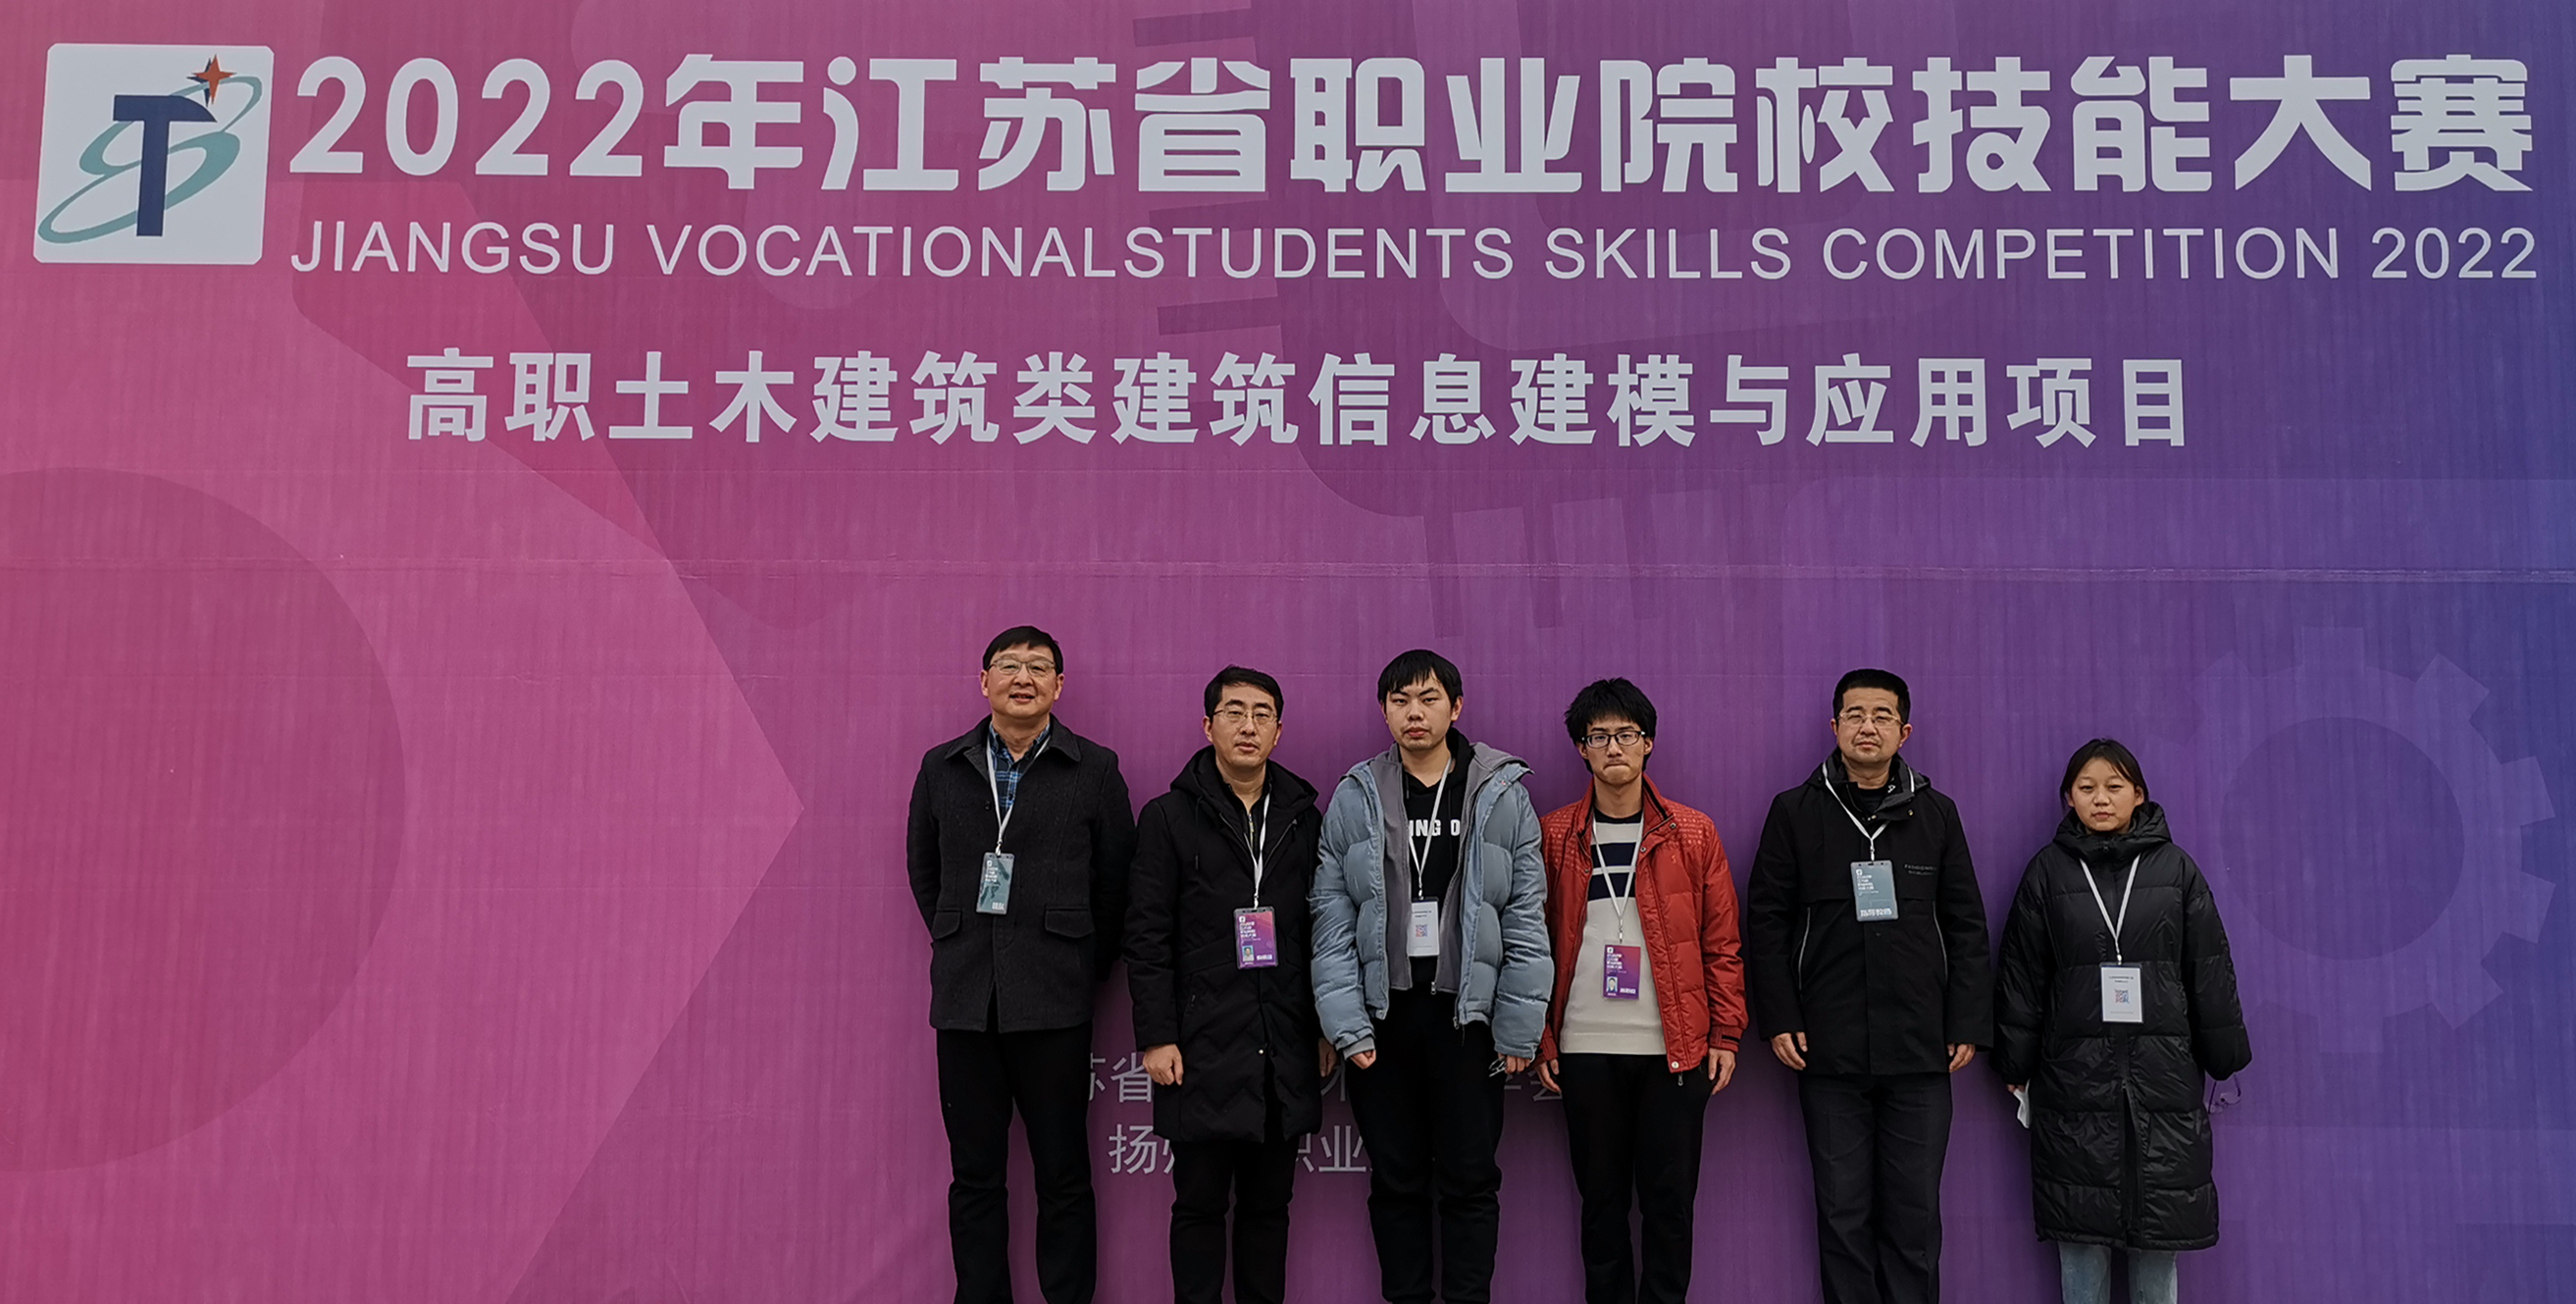 建筑工程学院师生在2022年江苏省职业院校技能大赛中荣获佳绩